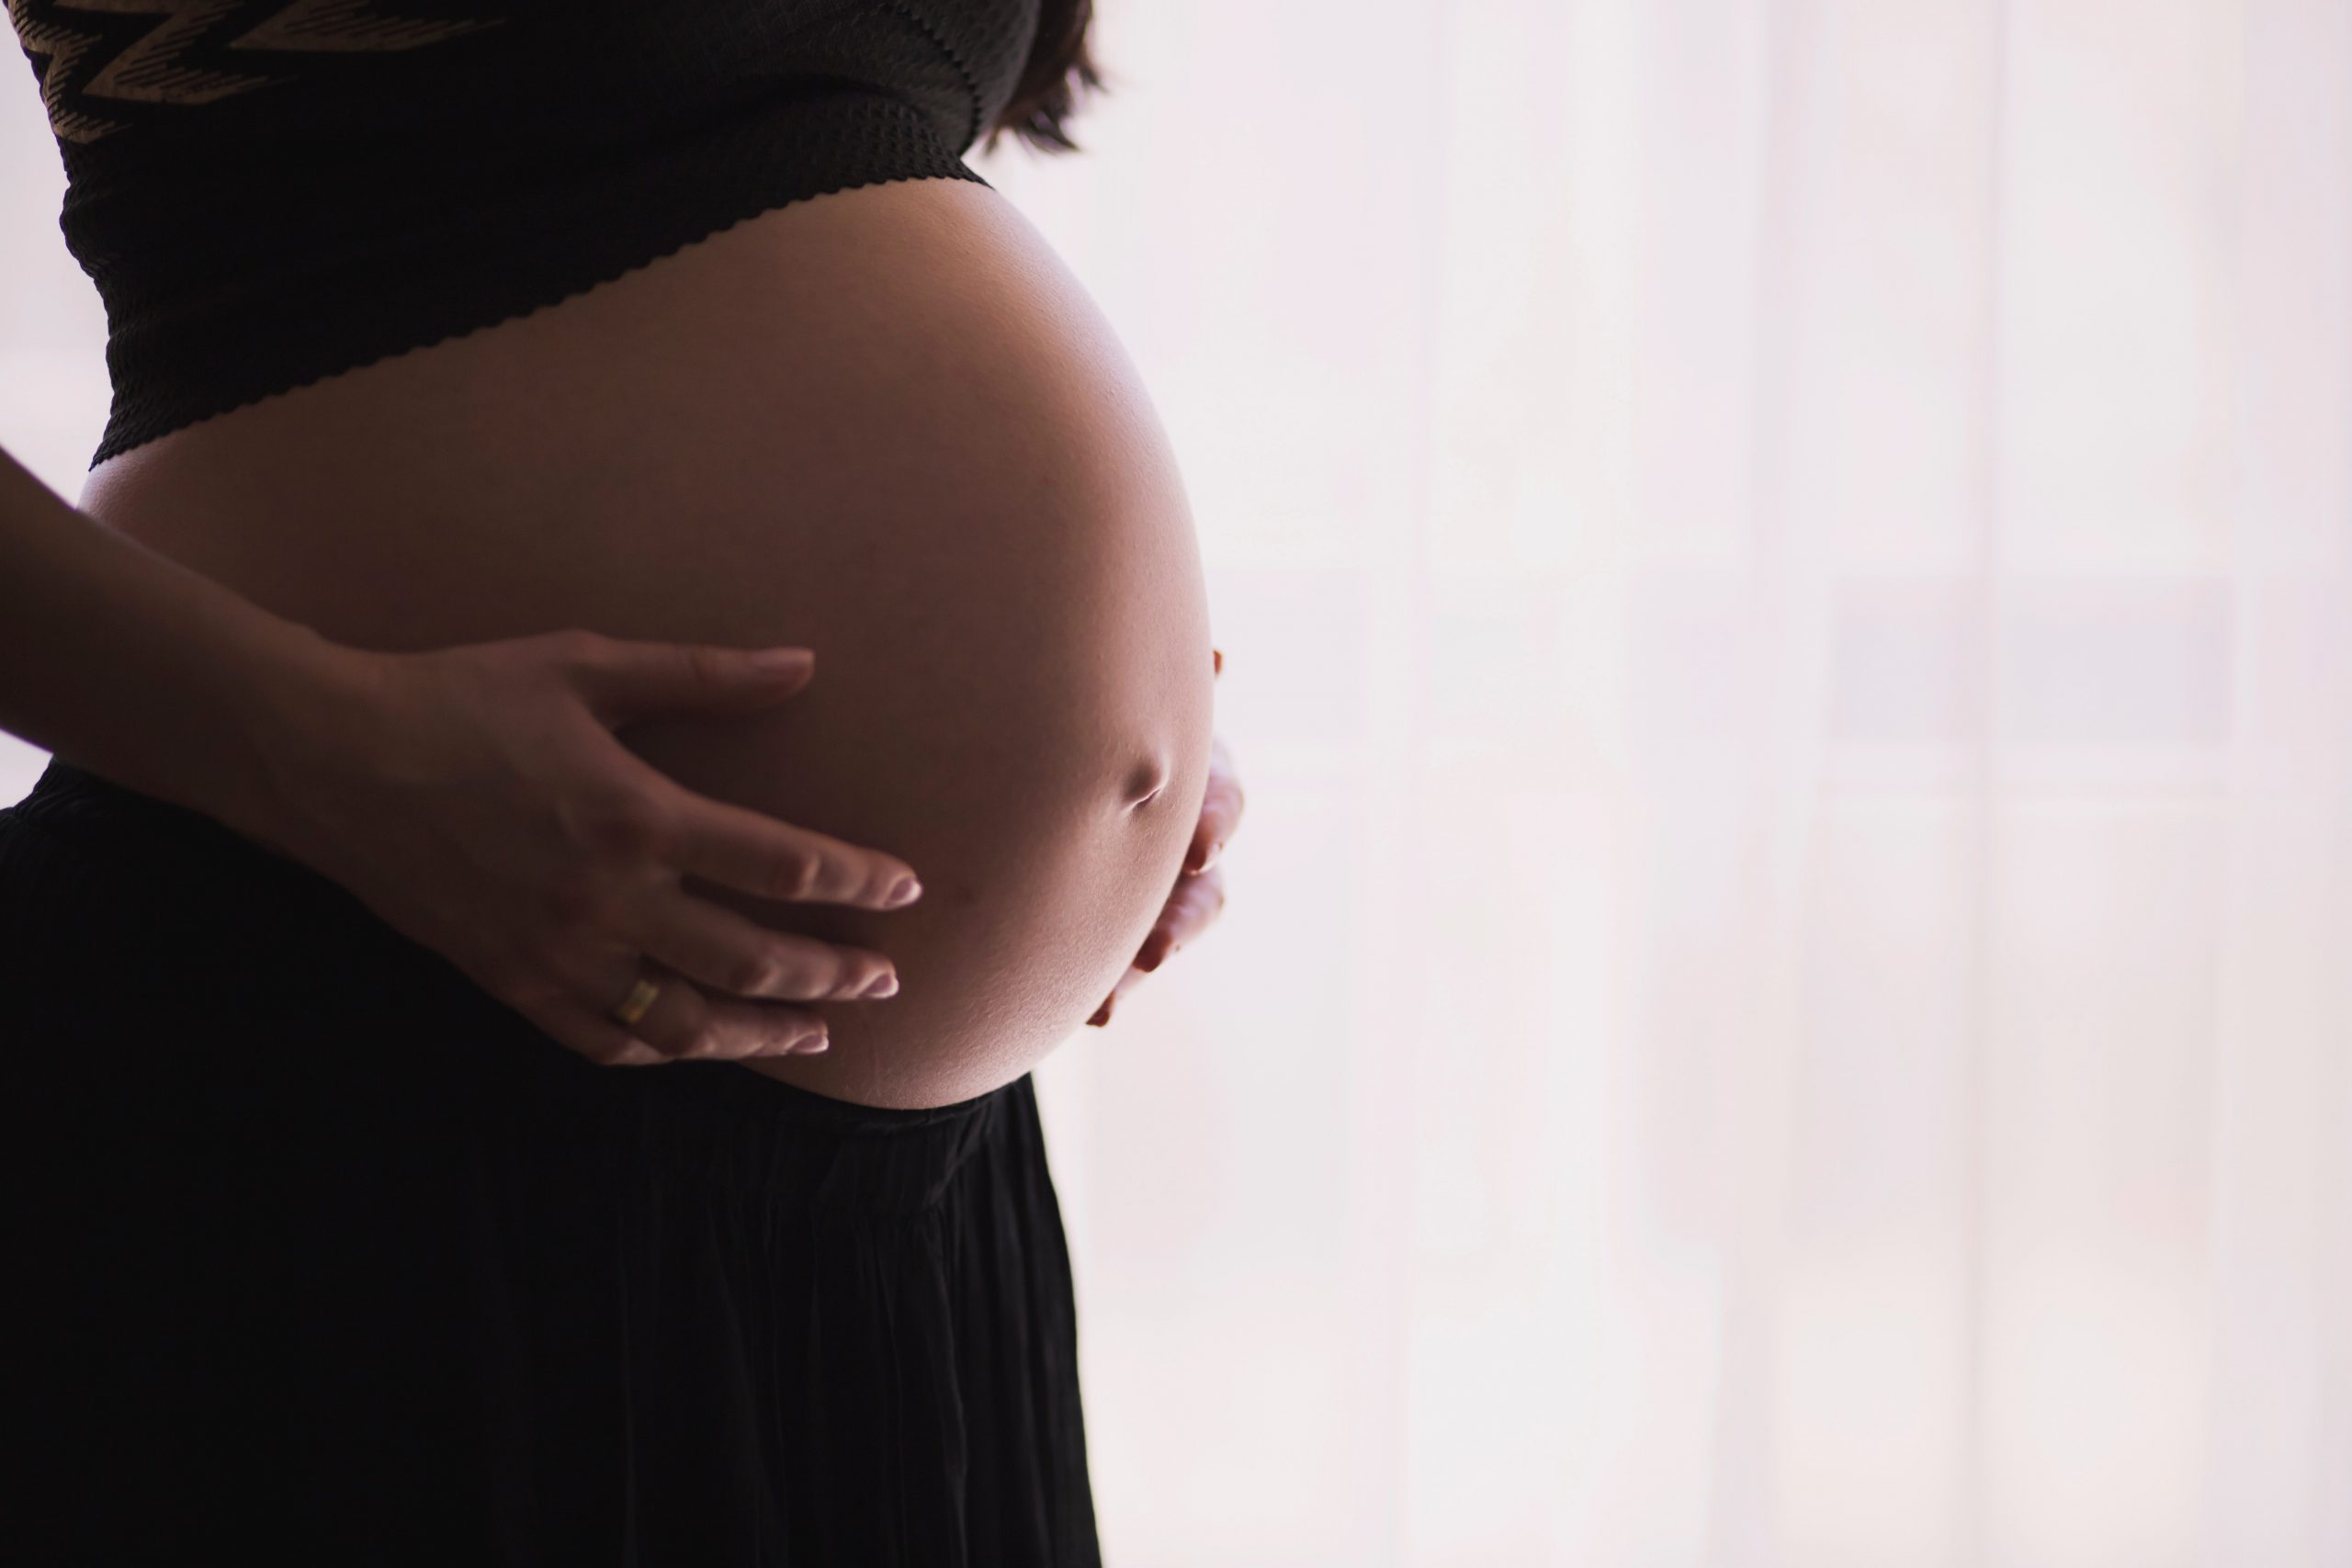 בדיקות מומלצות במהלך הריון